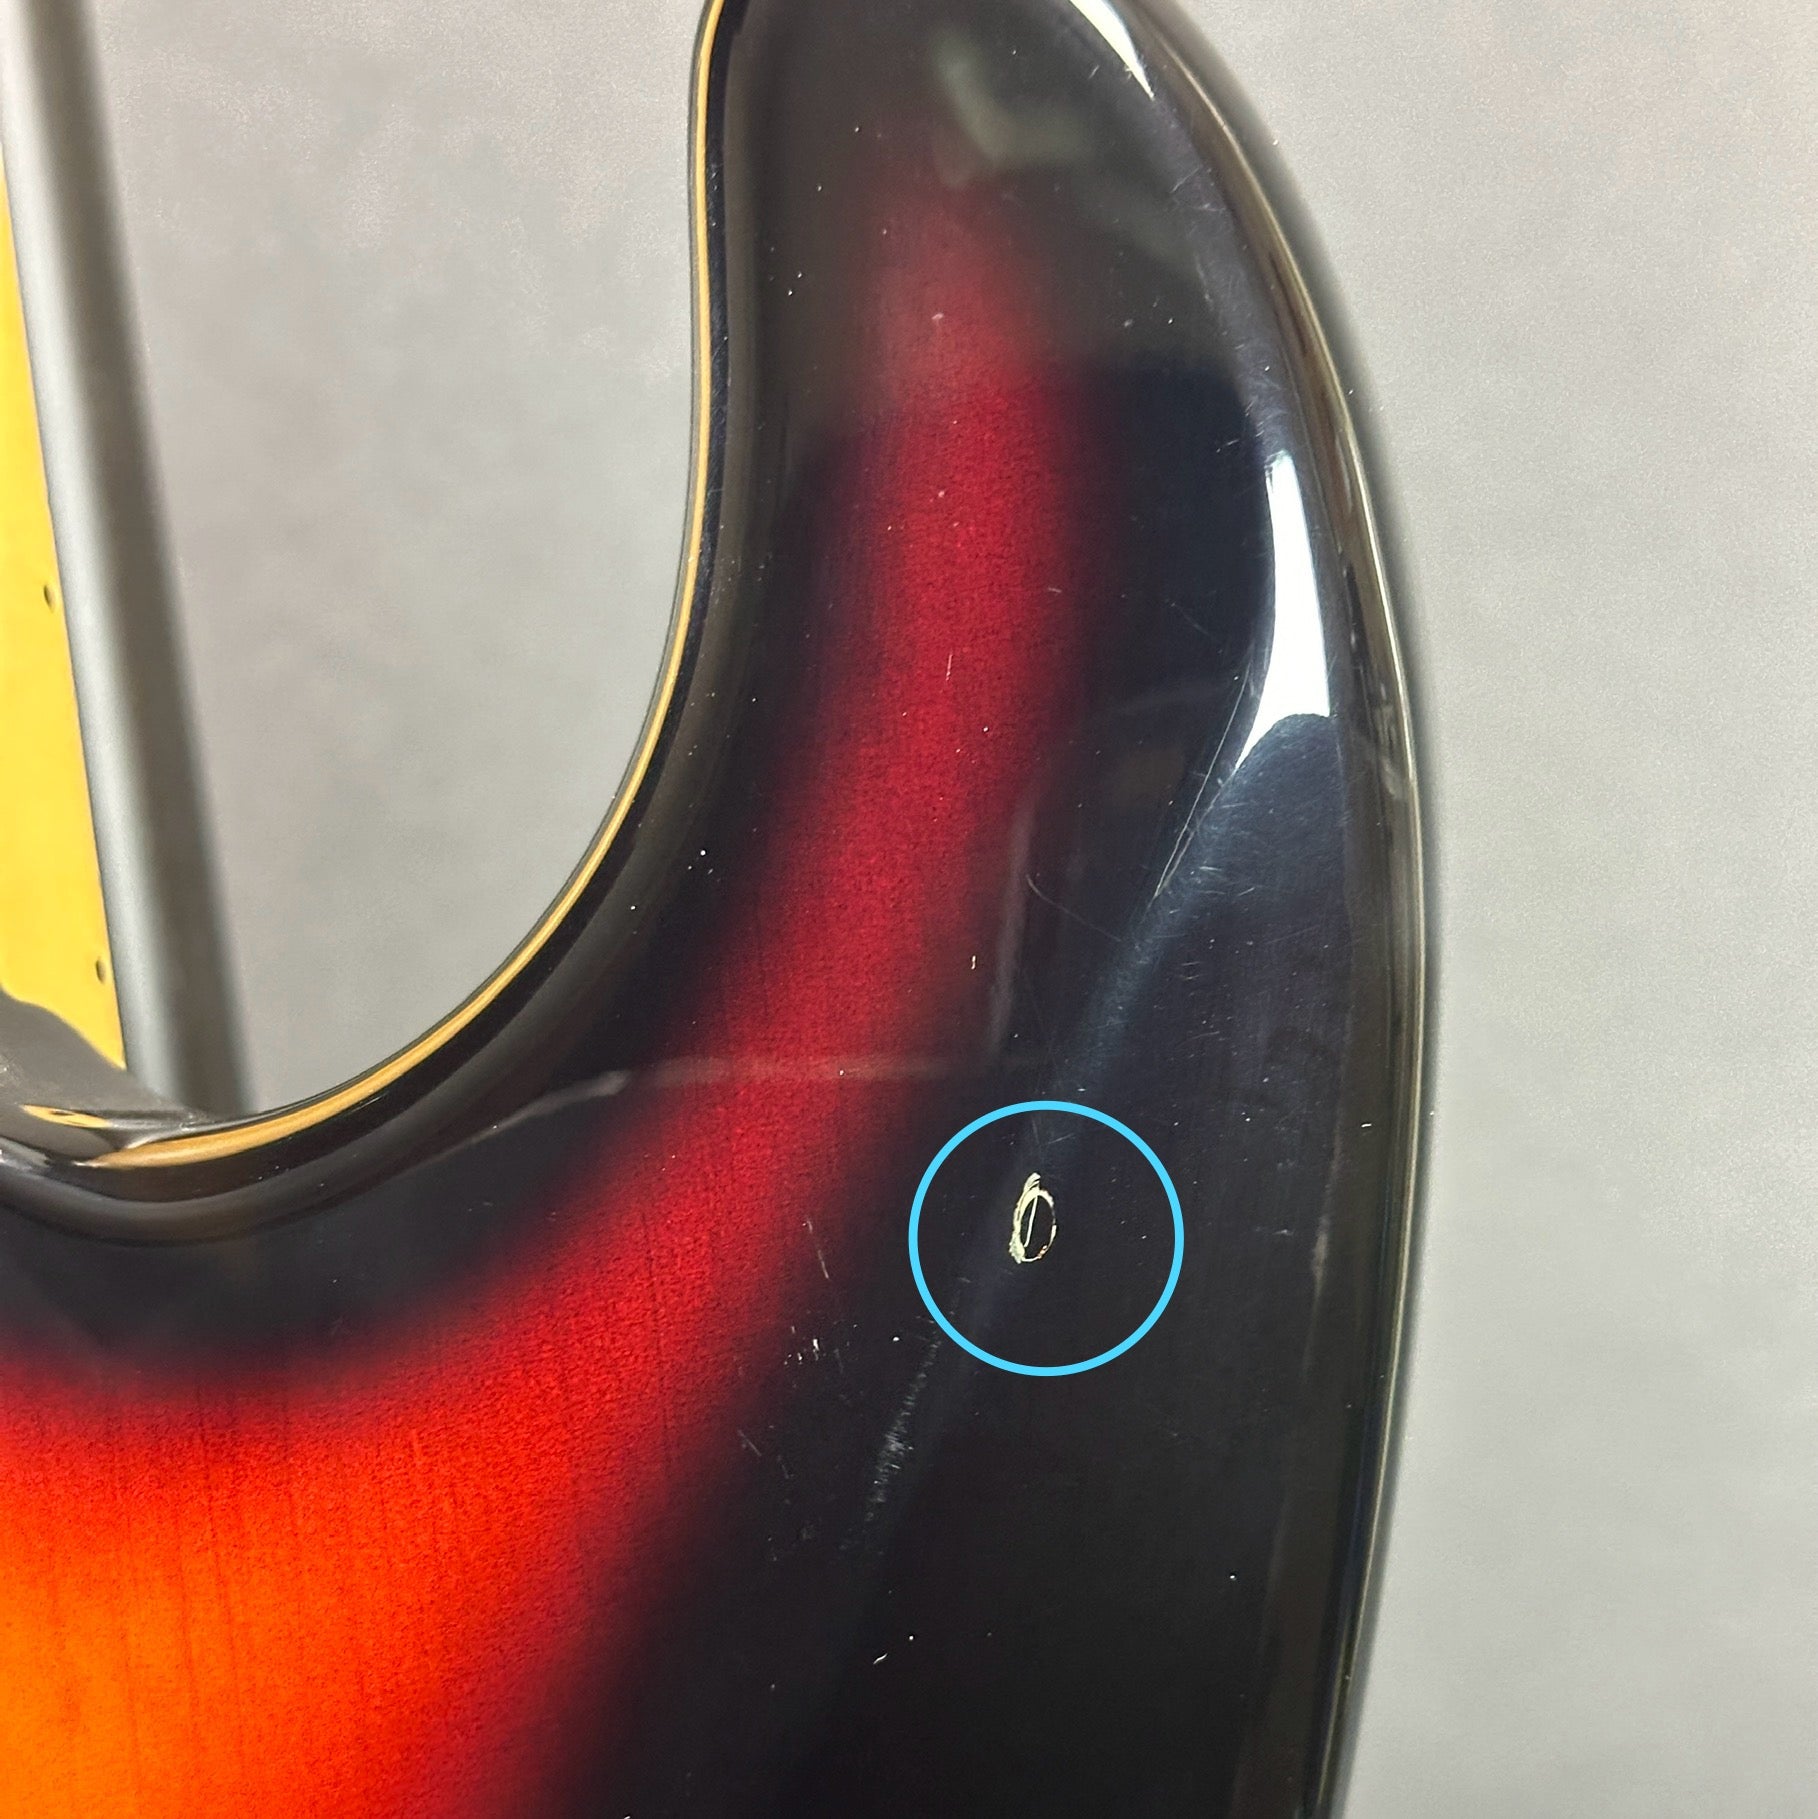 Damage on back of horn of Used 1998 Fender California Strat Sunburst.